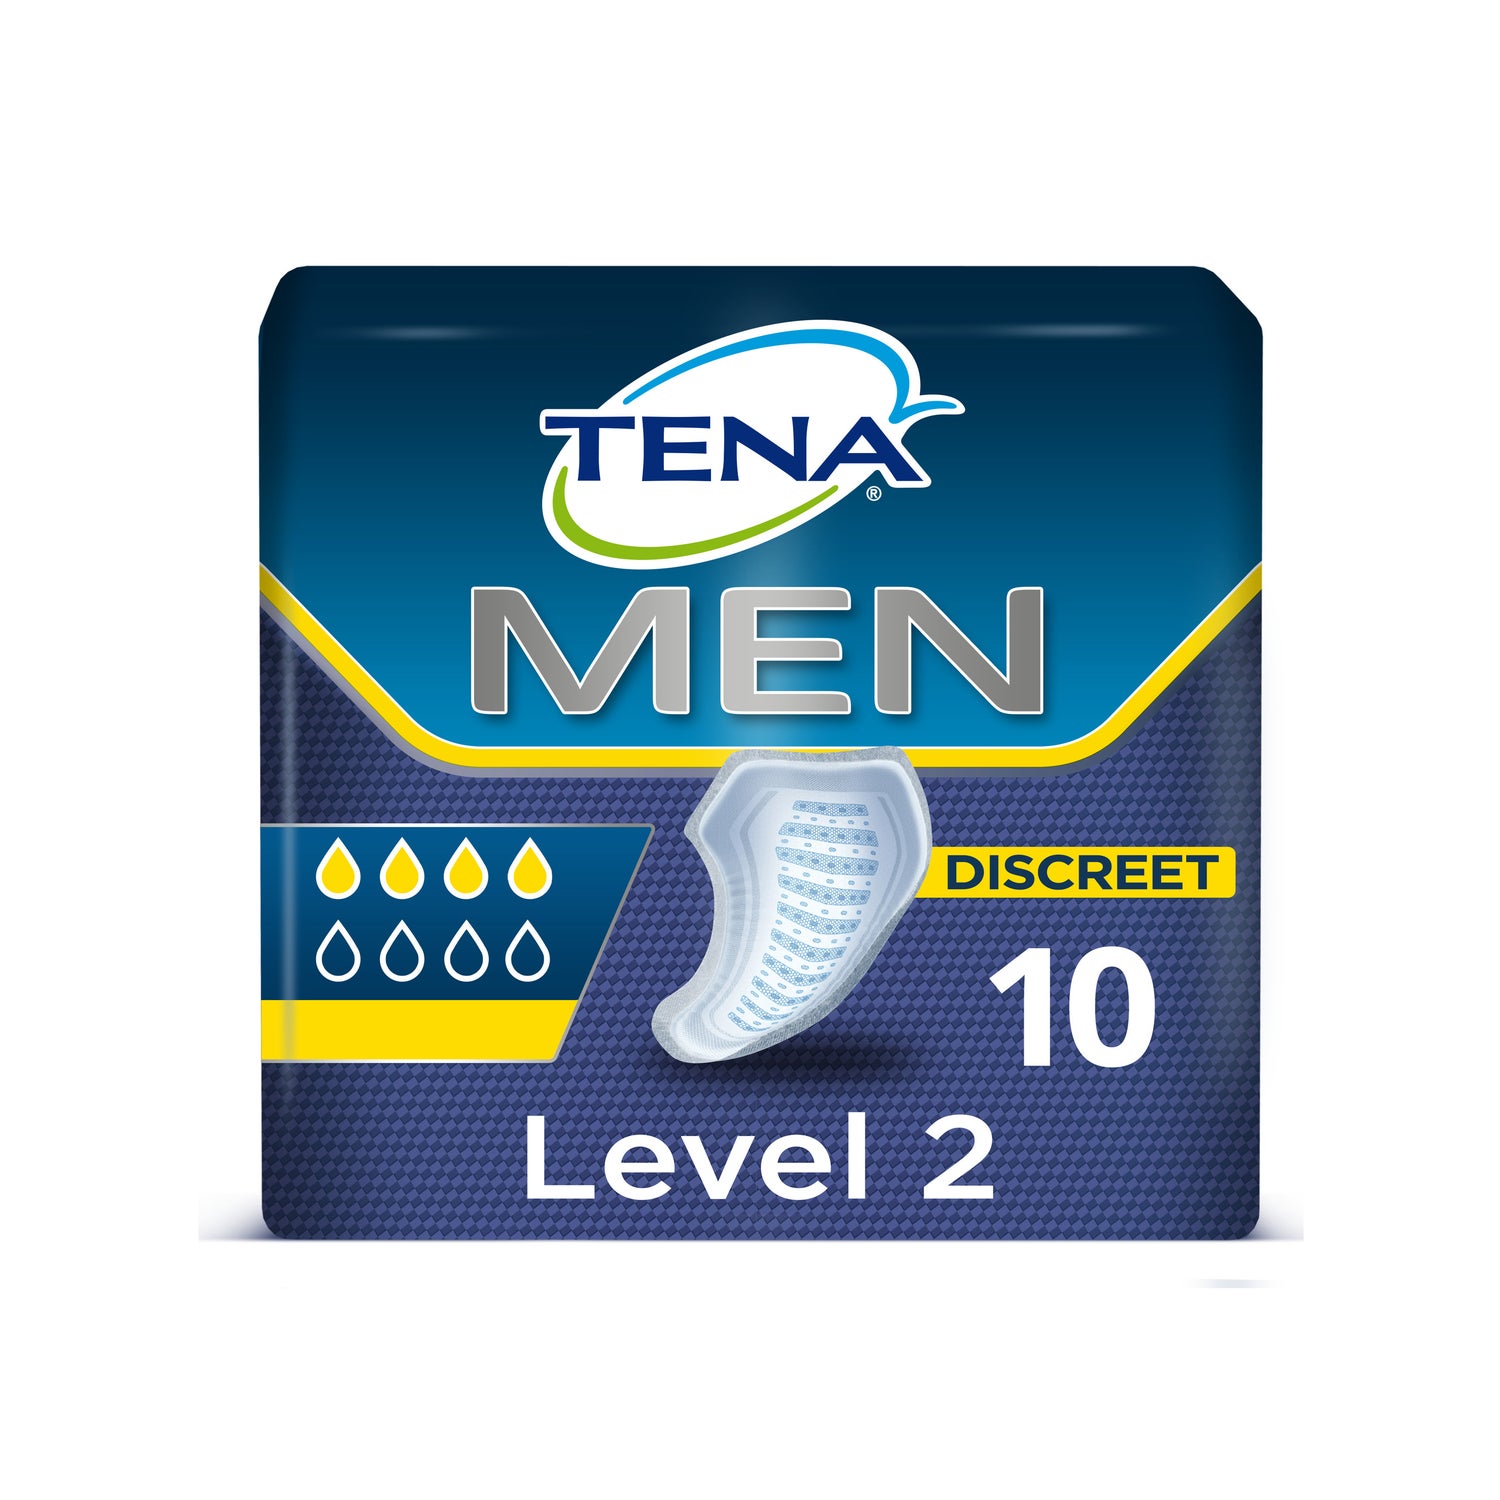 Incontinencia: Tena Men Level 2 20 Unidades